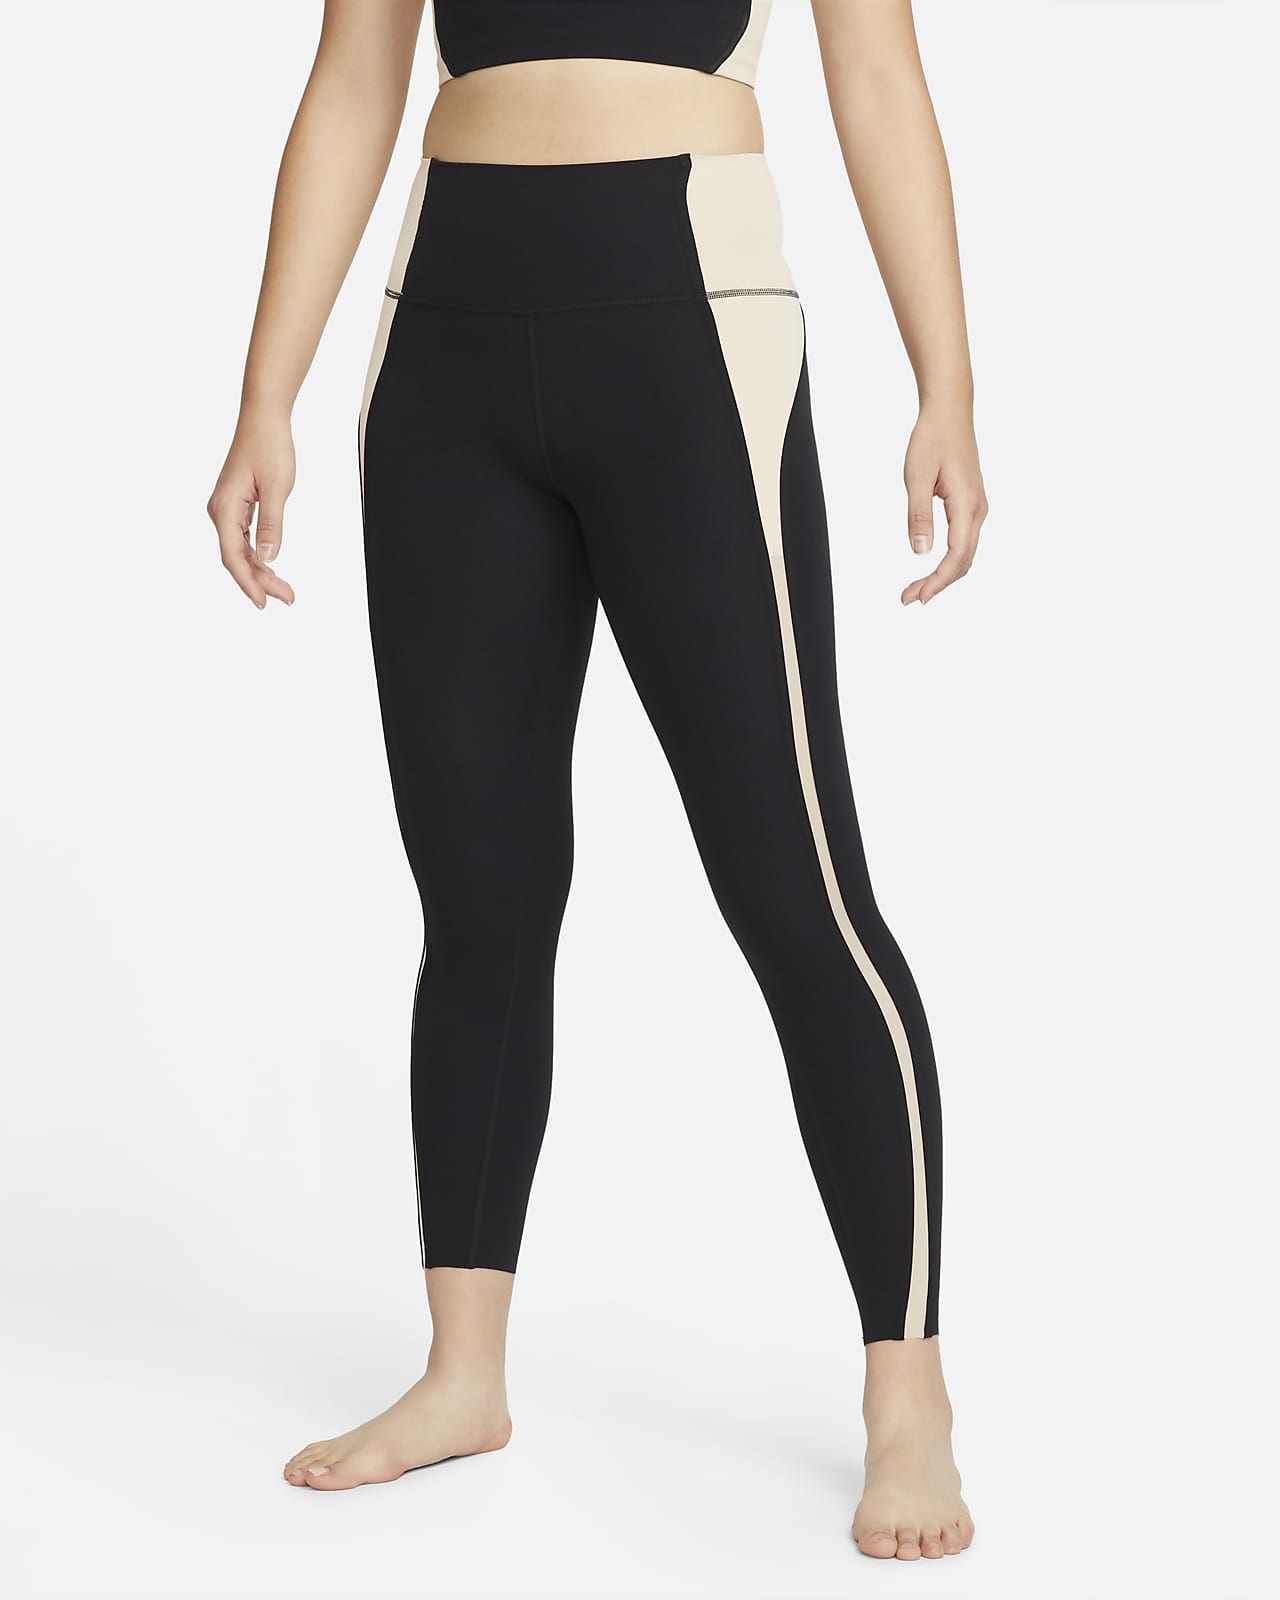 Ladies Tank Vest or Capri Leggings Women Active Mid-Calf Pants Yoga Top XS-L